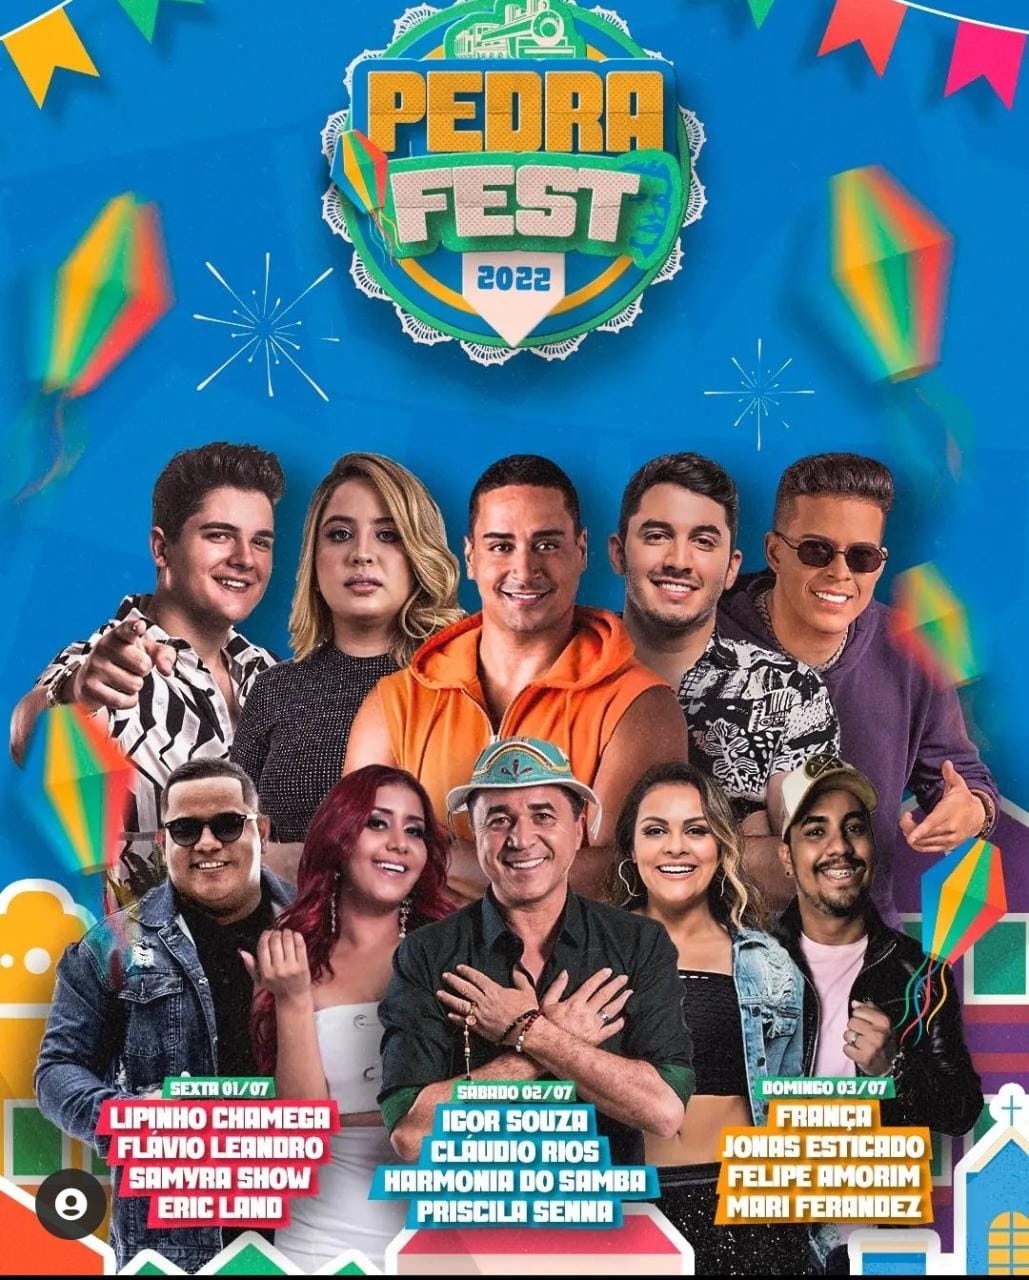 Pedra Fest 2022 começa hoje com várias atrações e bandas nacionais